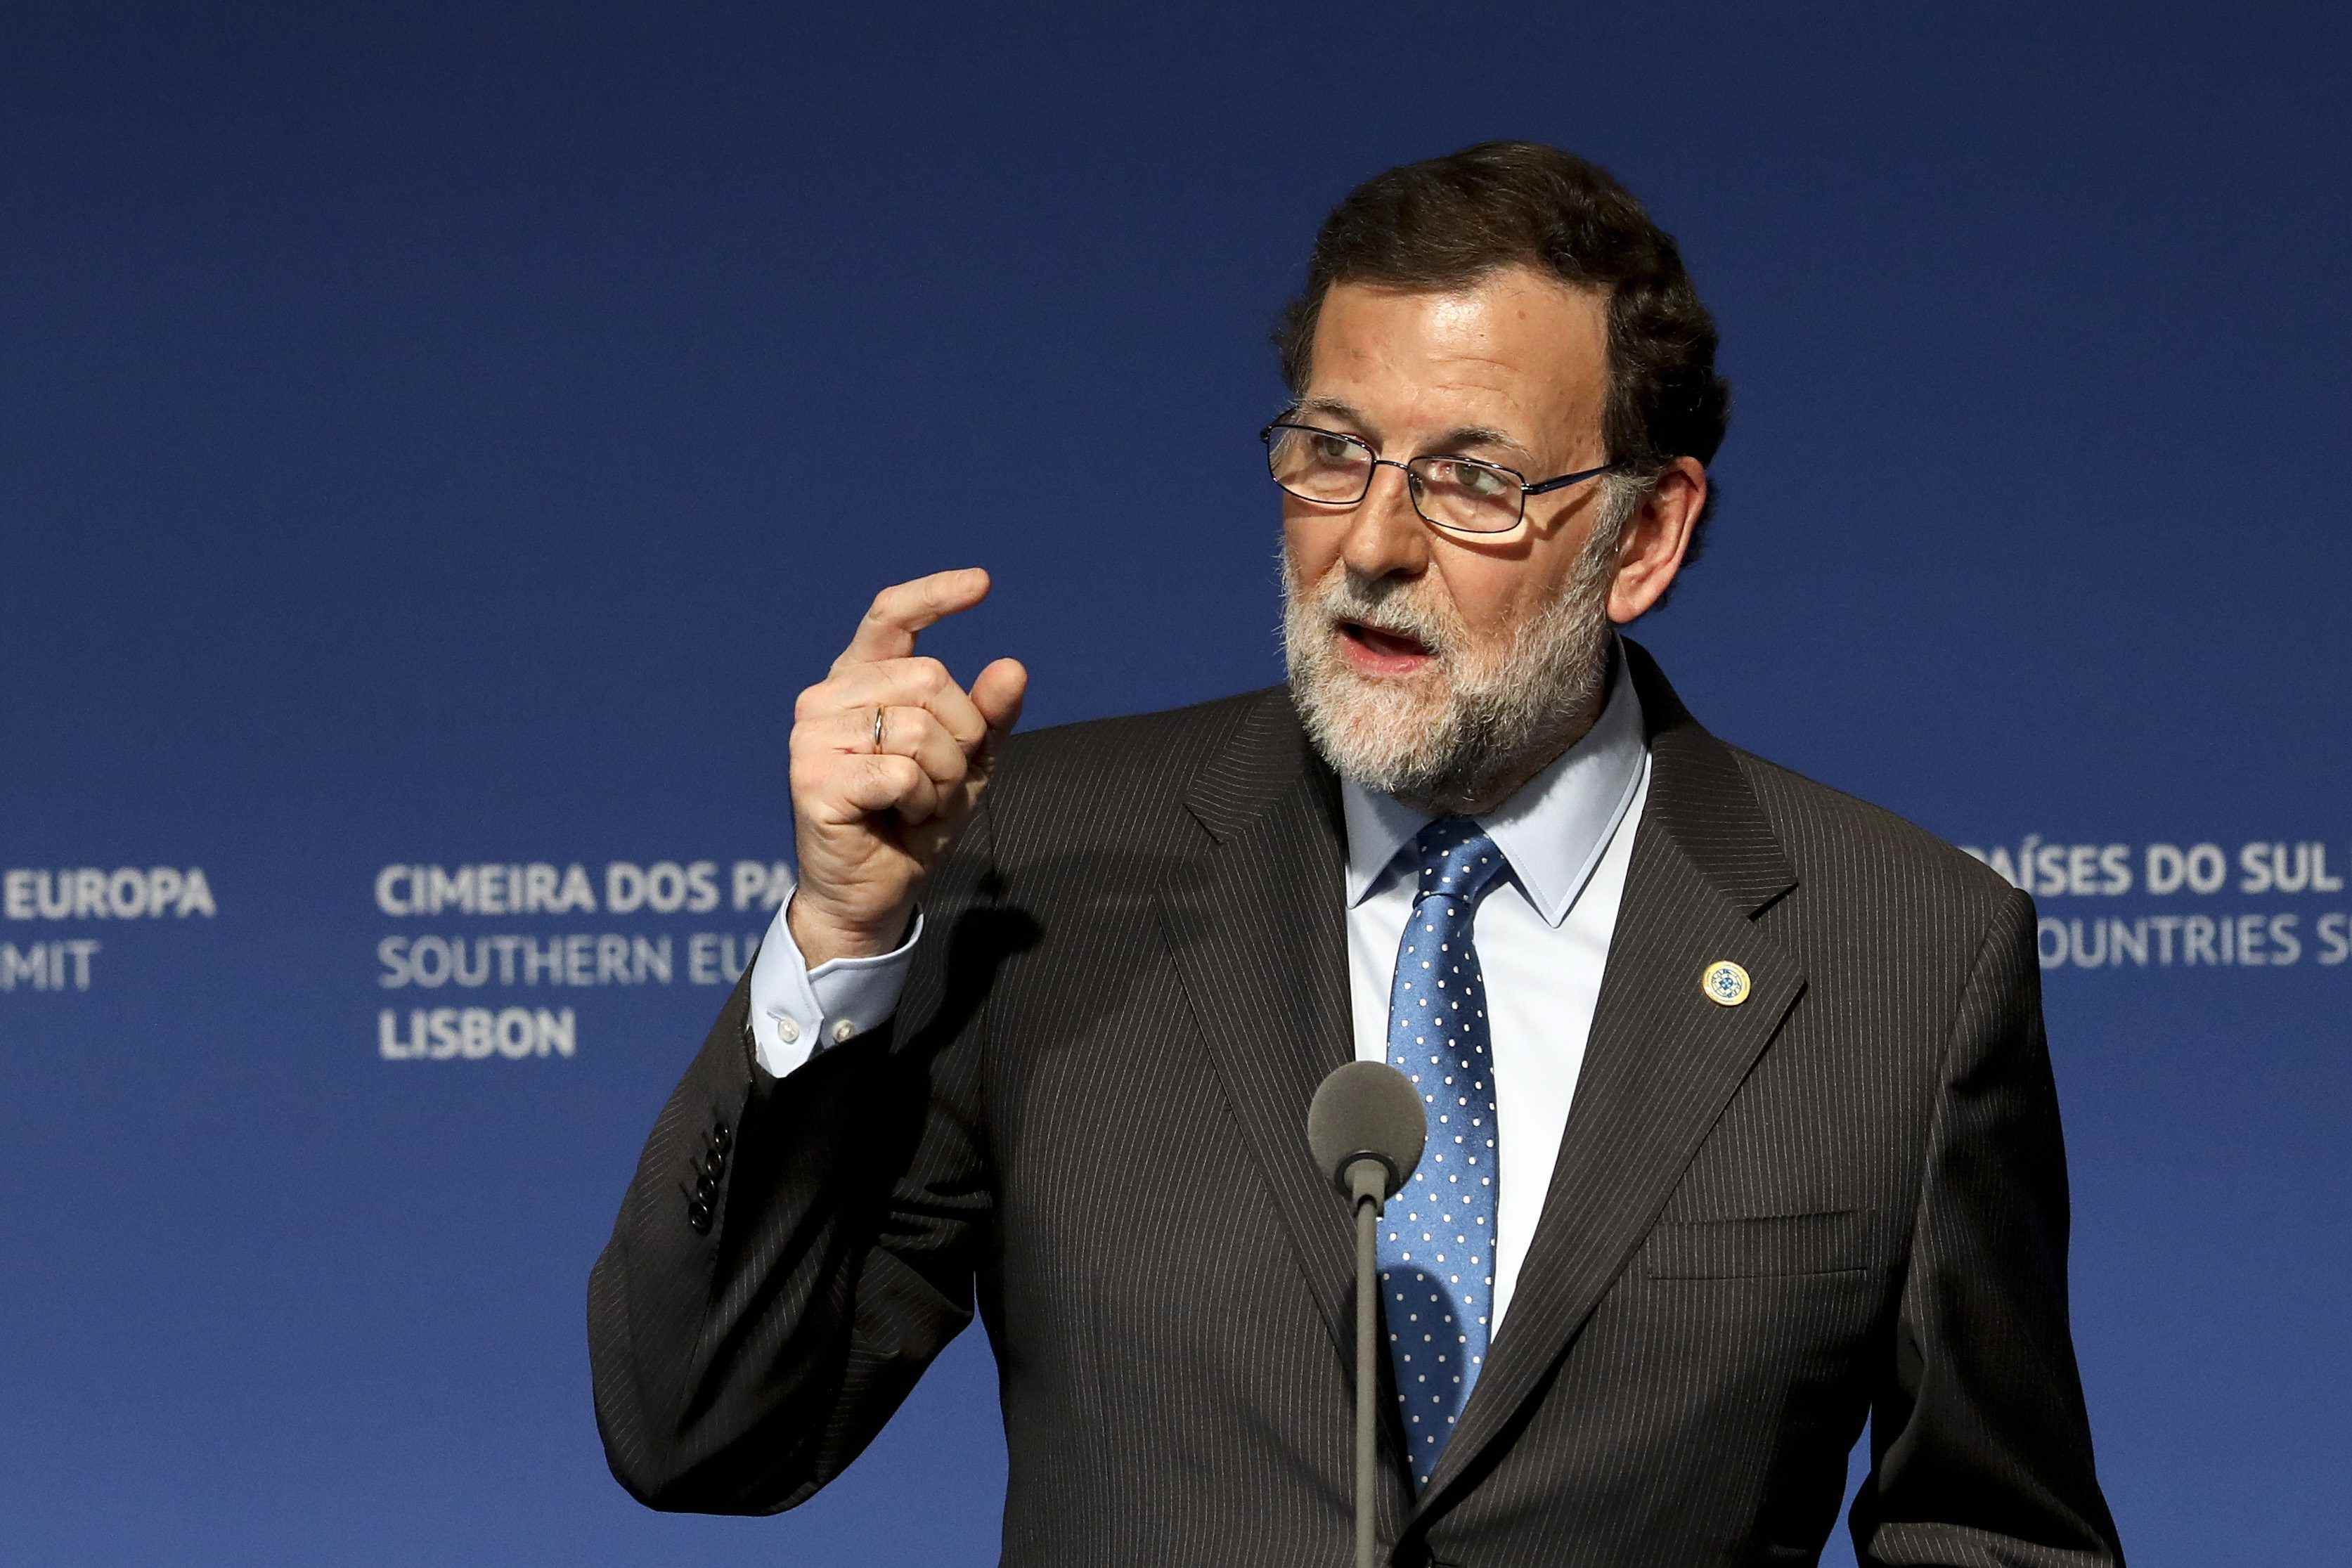 Rajoy responde a Puigdemont (por carta): "Es imposible y liquida el orden constitucional"